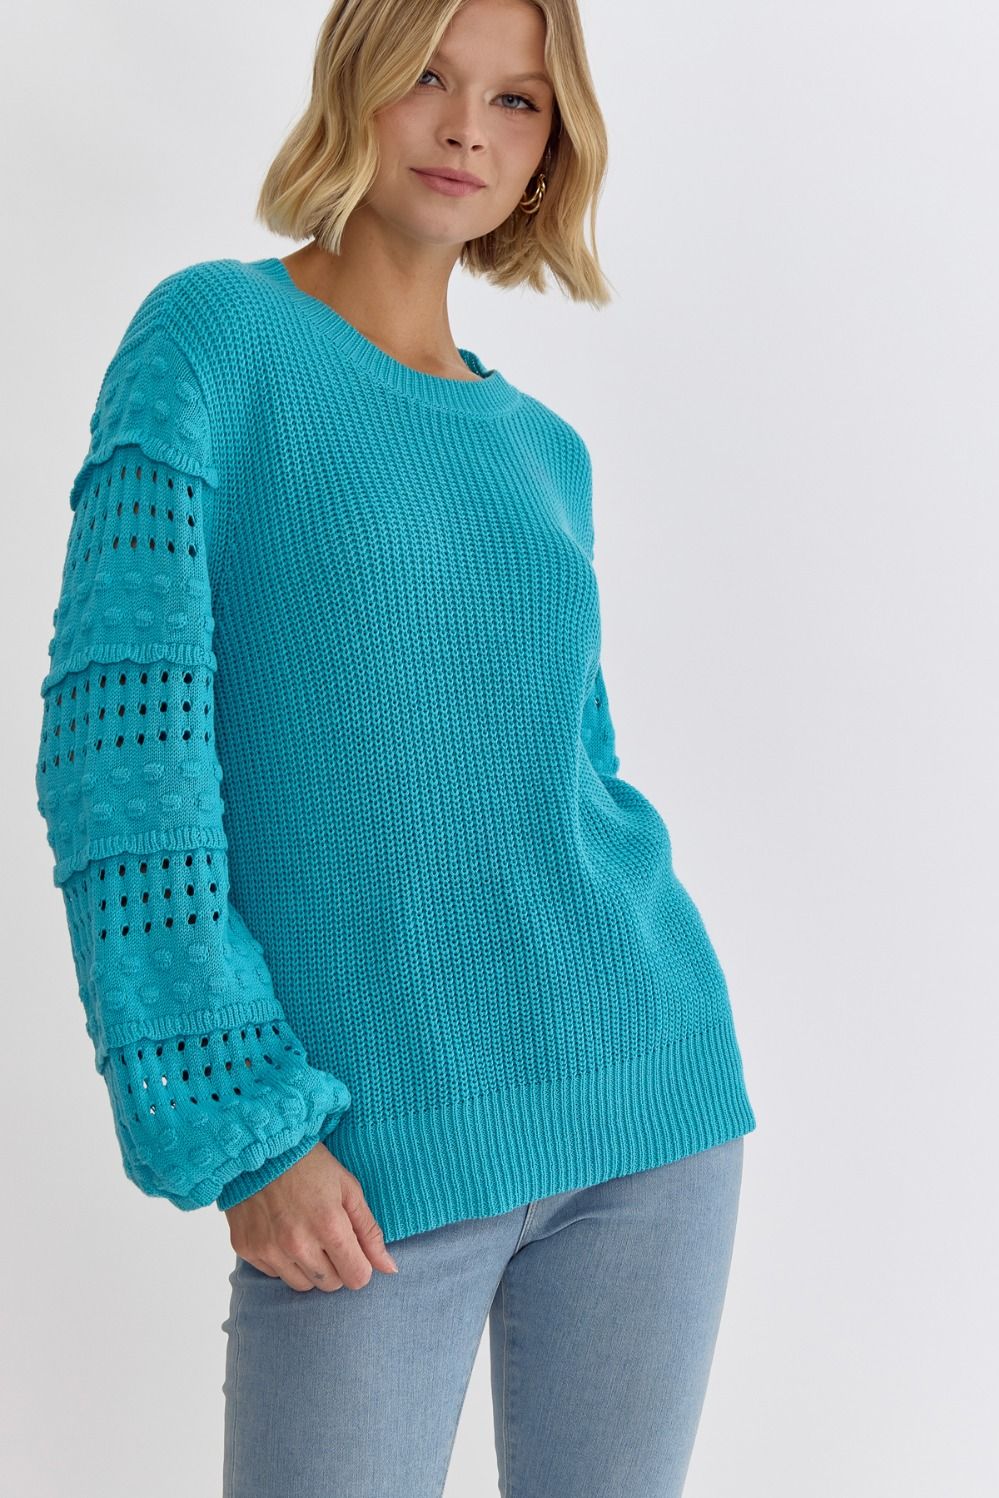 Farah Sweater (Aqua)